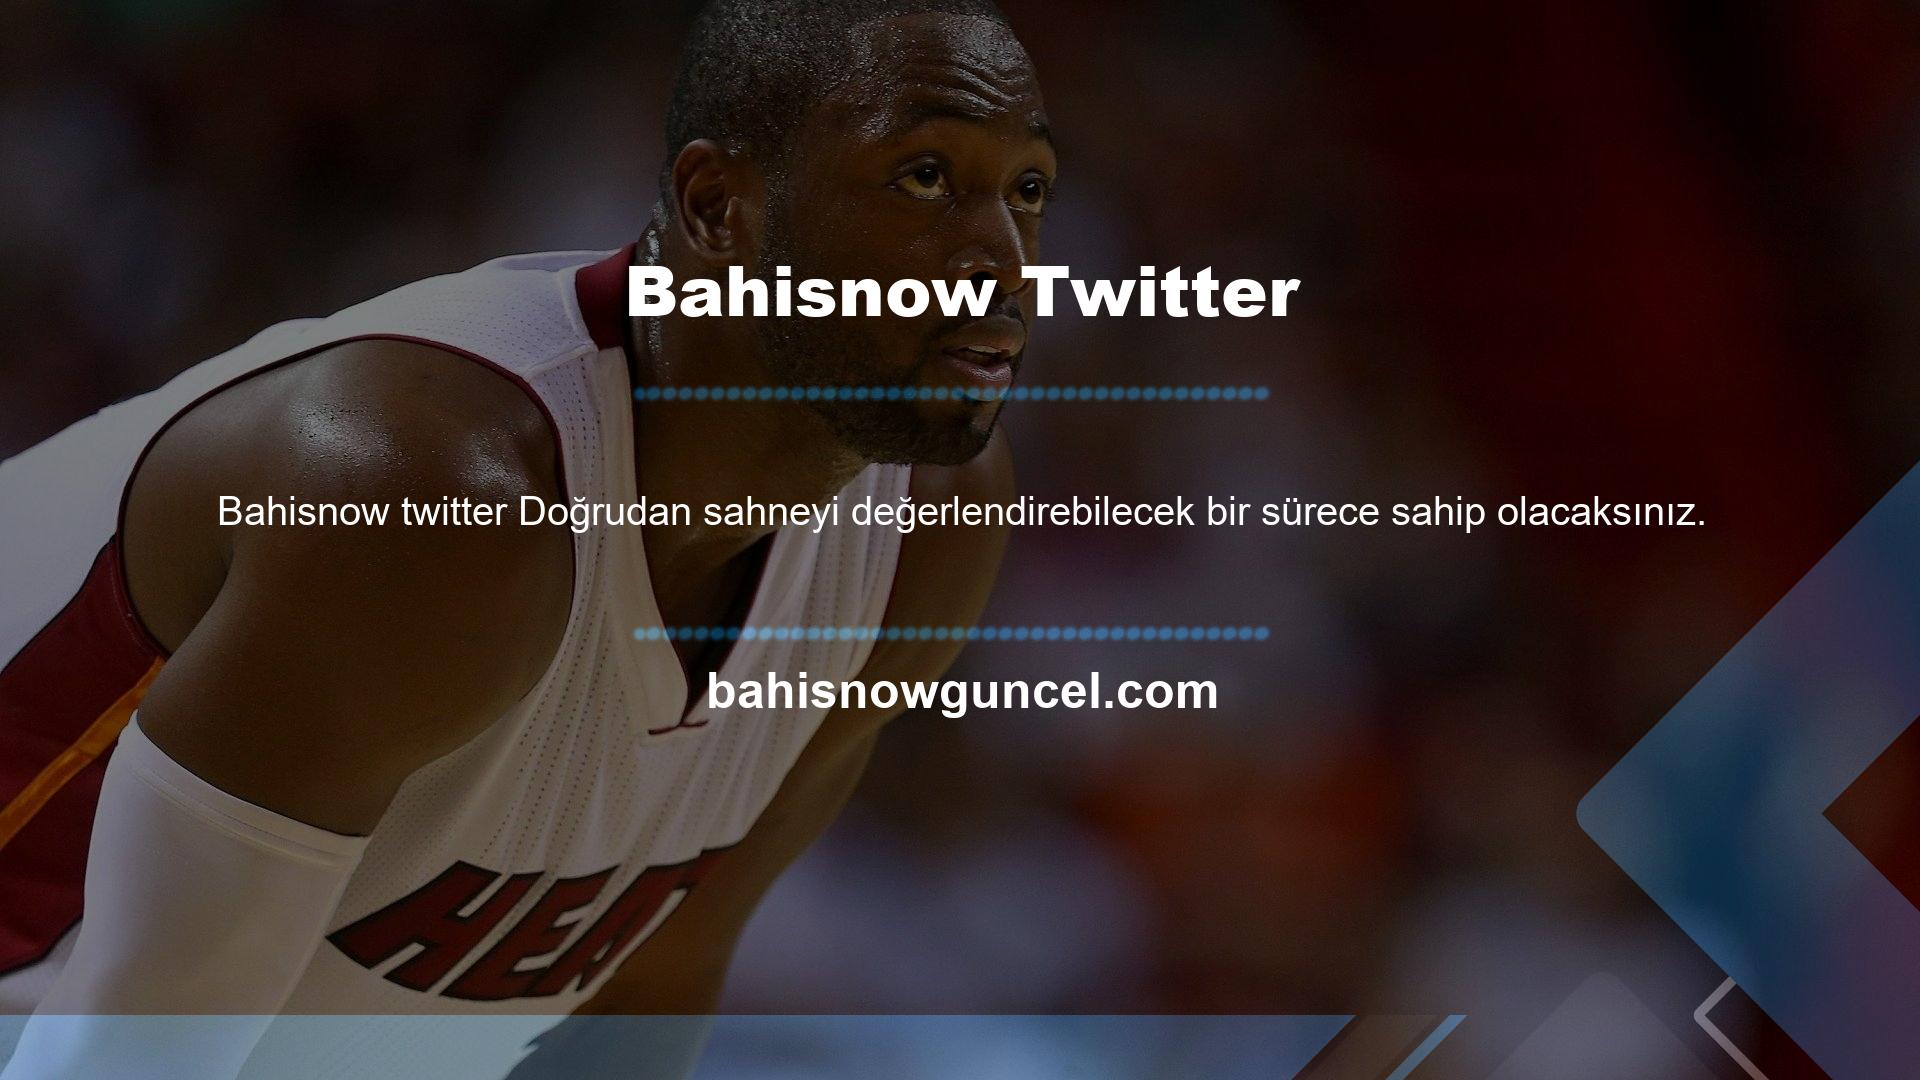 Başarılı seviyeler ve etkili eğitim, Bahisnow Twitter'da başarıları değerlendirmek için zamanınız olmayacak